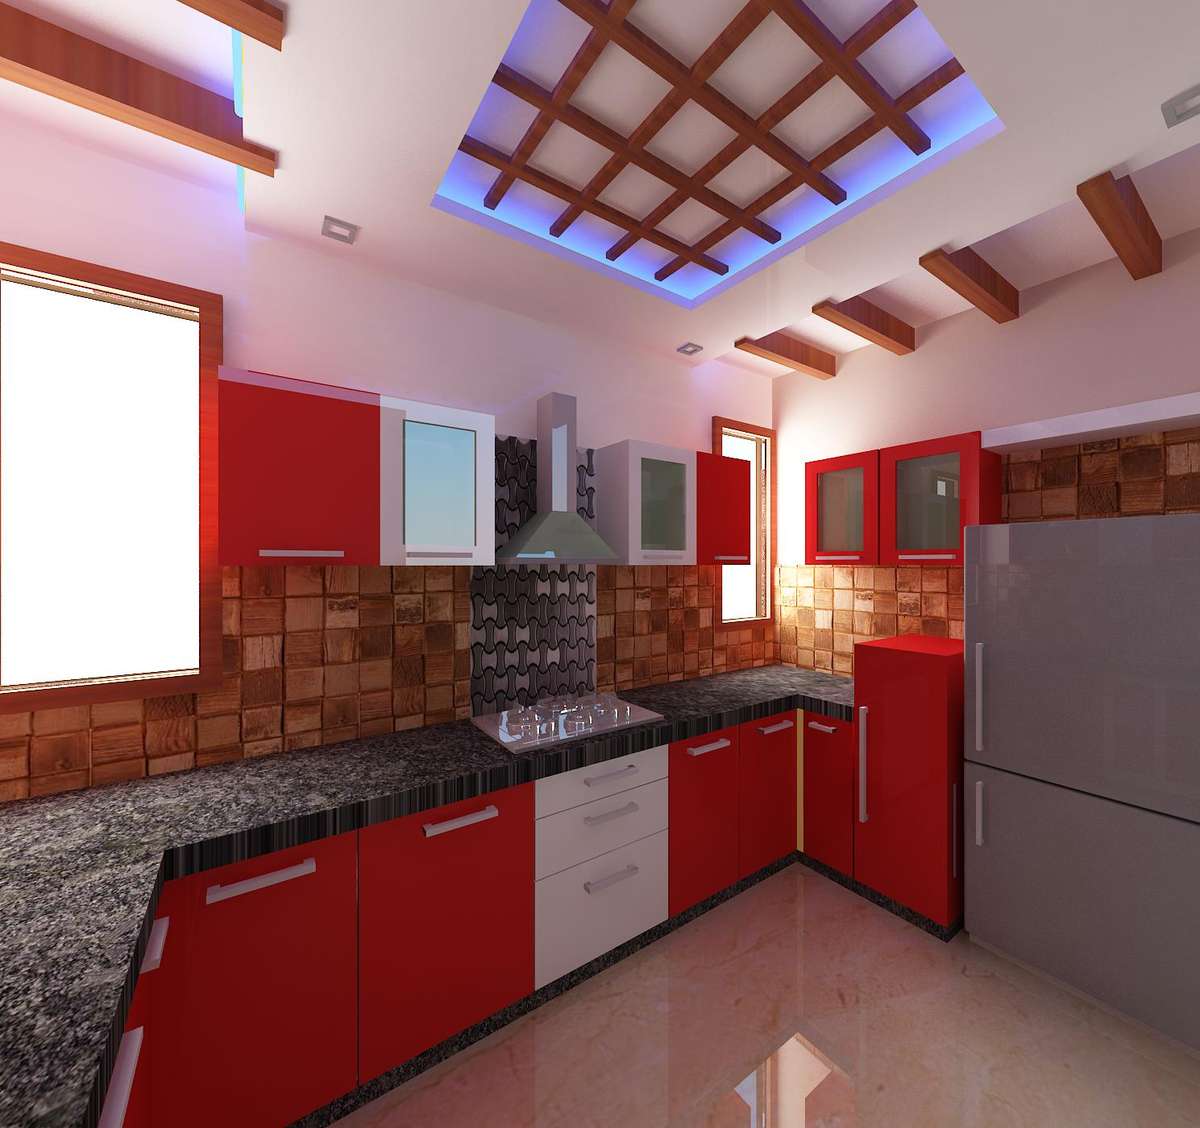 Ceiling, Kitchen, Storage, Lighting Designs by Interior Designer Samar pardhan, Delhi | Kolo